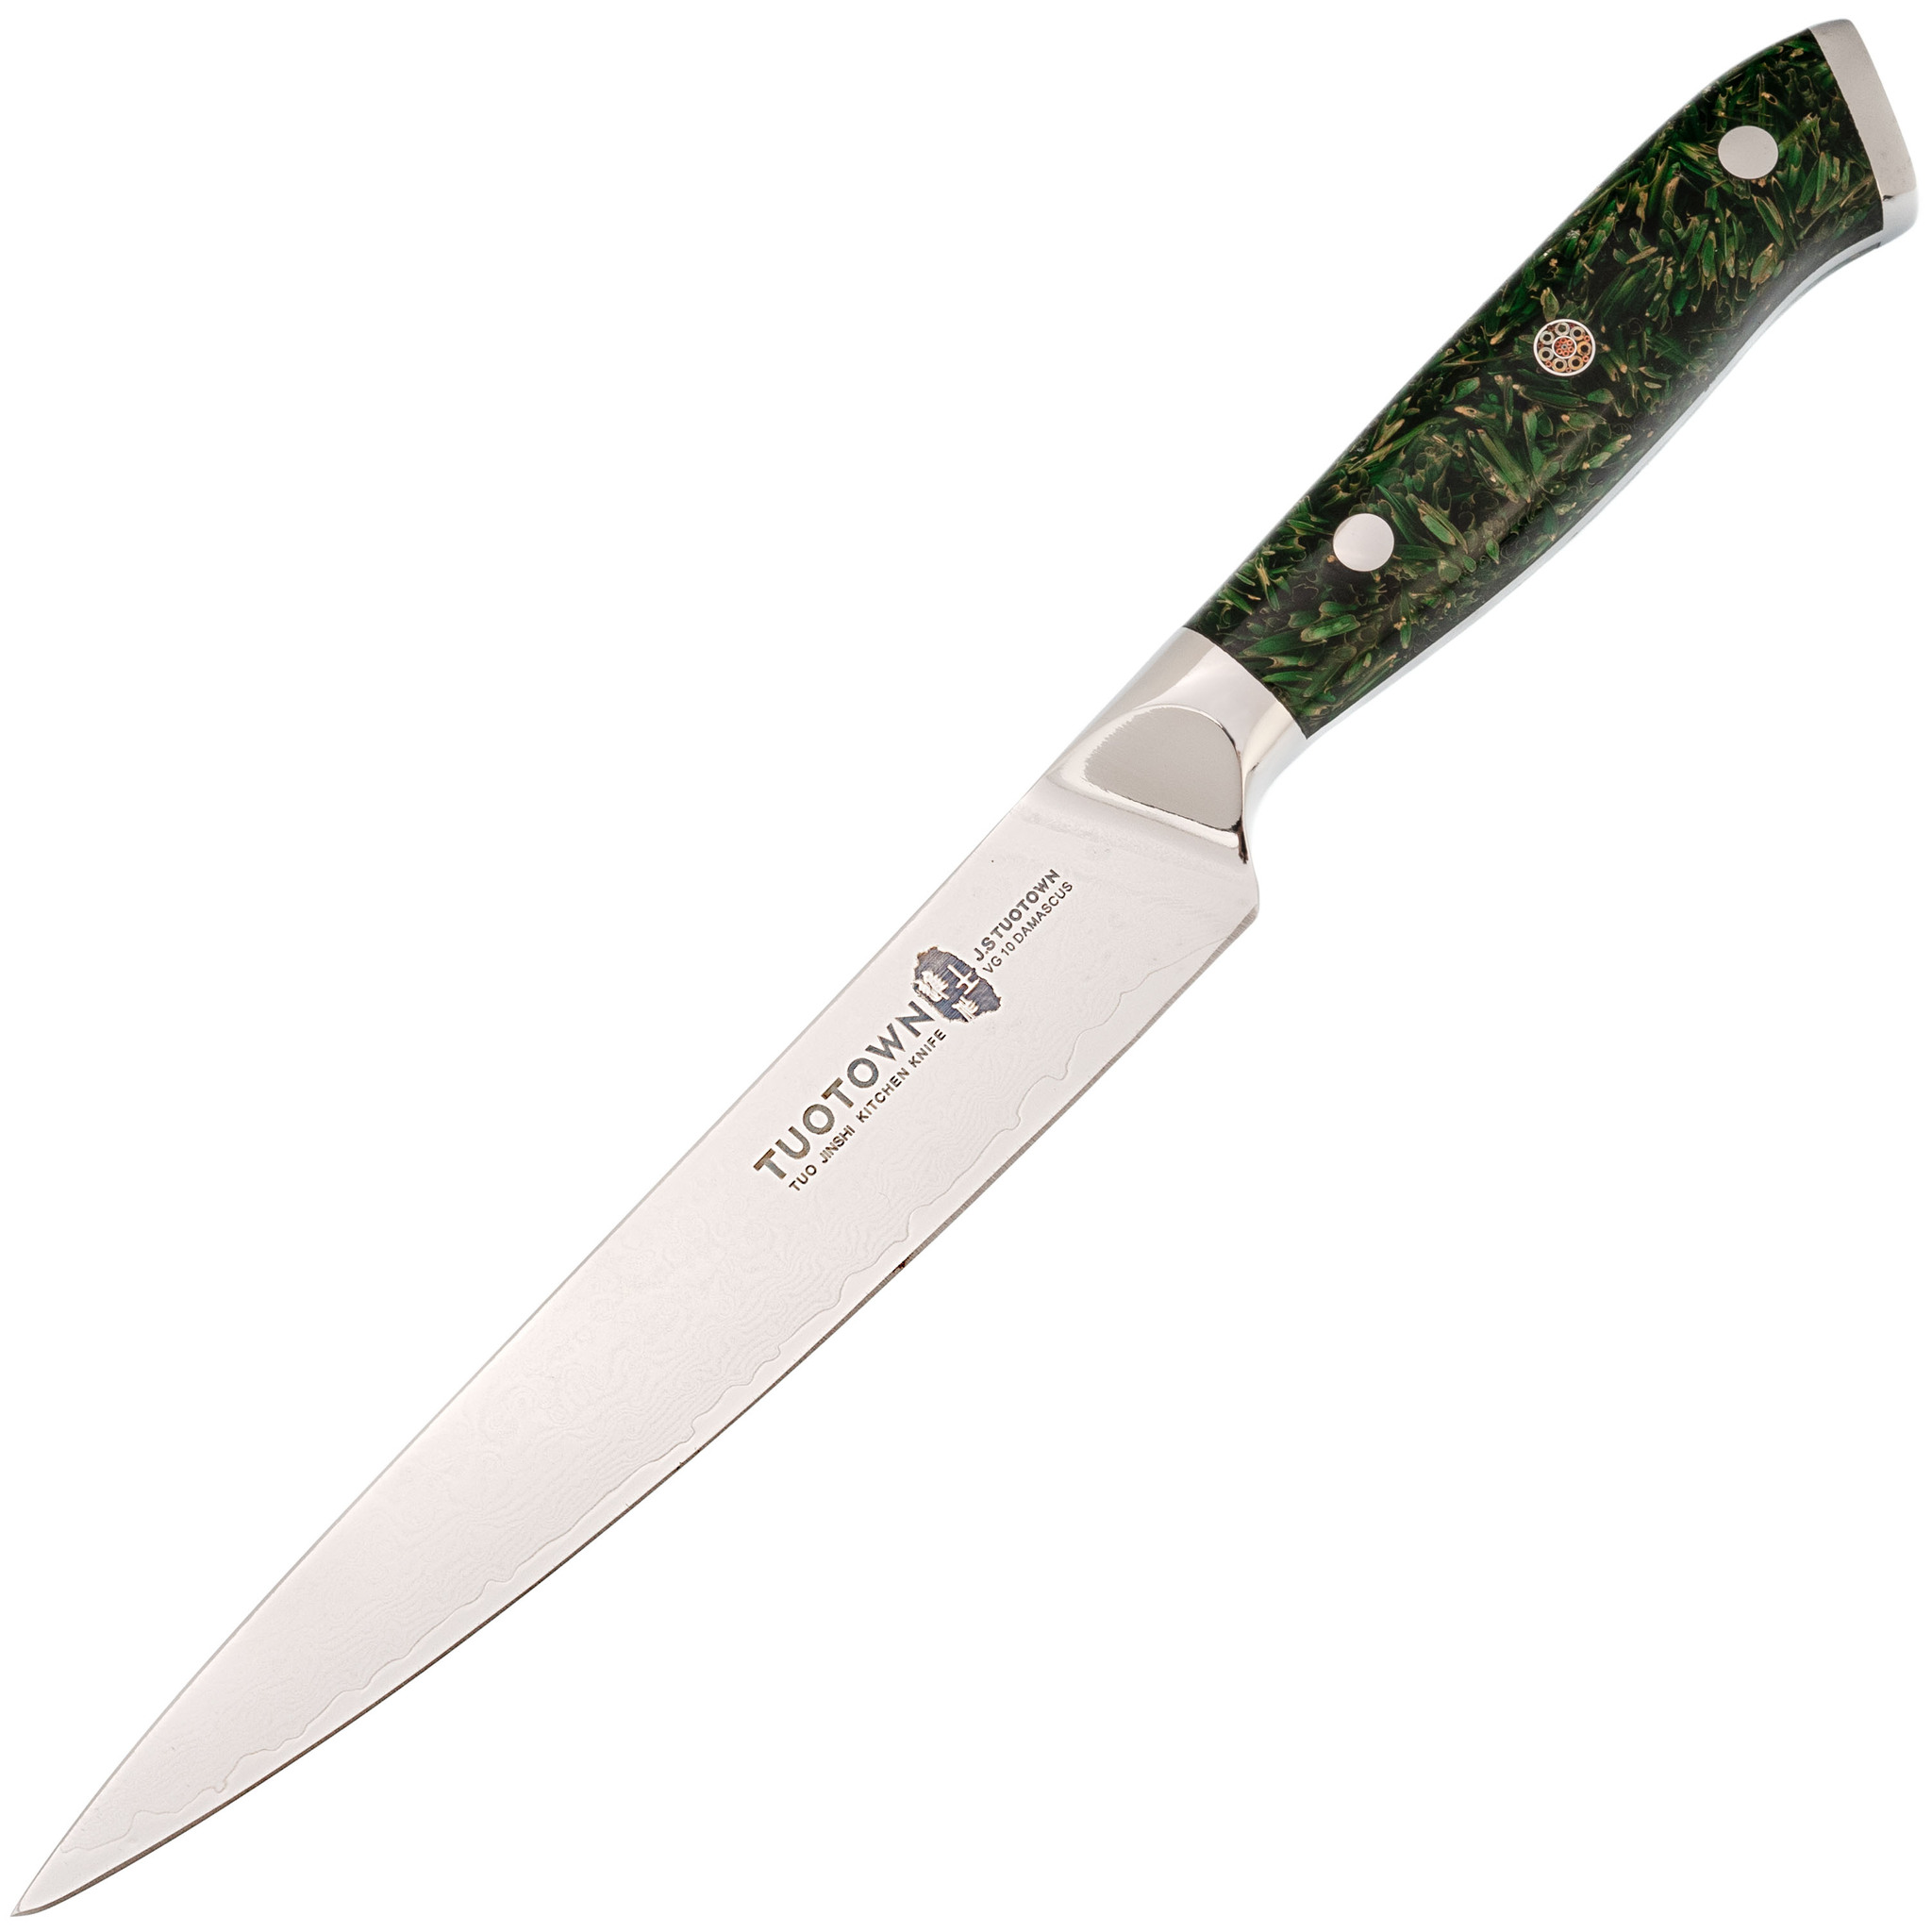 Кухонный нож Tuotown, сталь VG10, обкладка Damascus, рукоять акрил, зеленый нож кухонный доляна salomon шеф лезвие 20 см